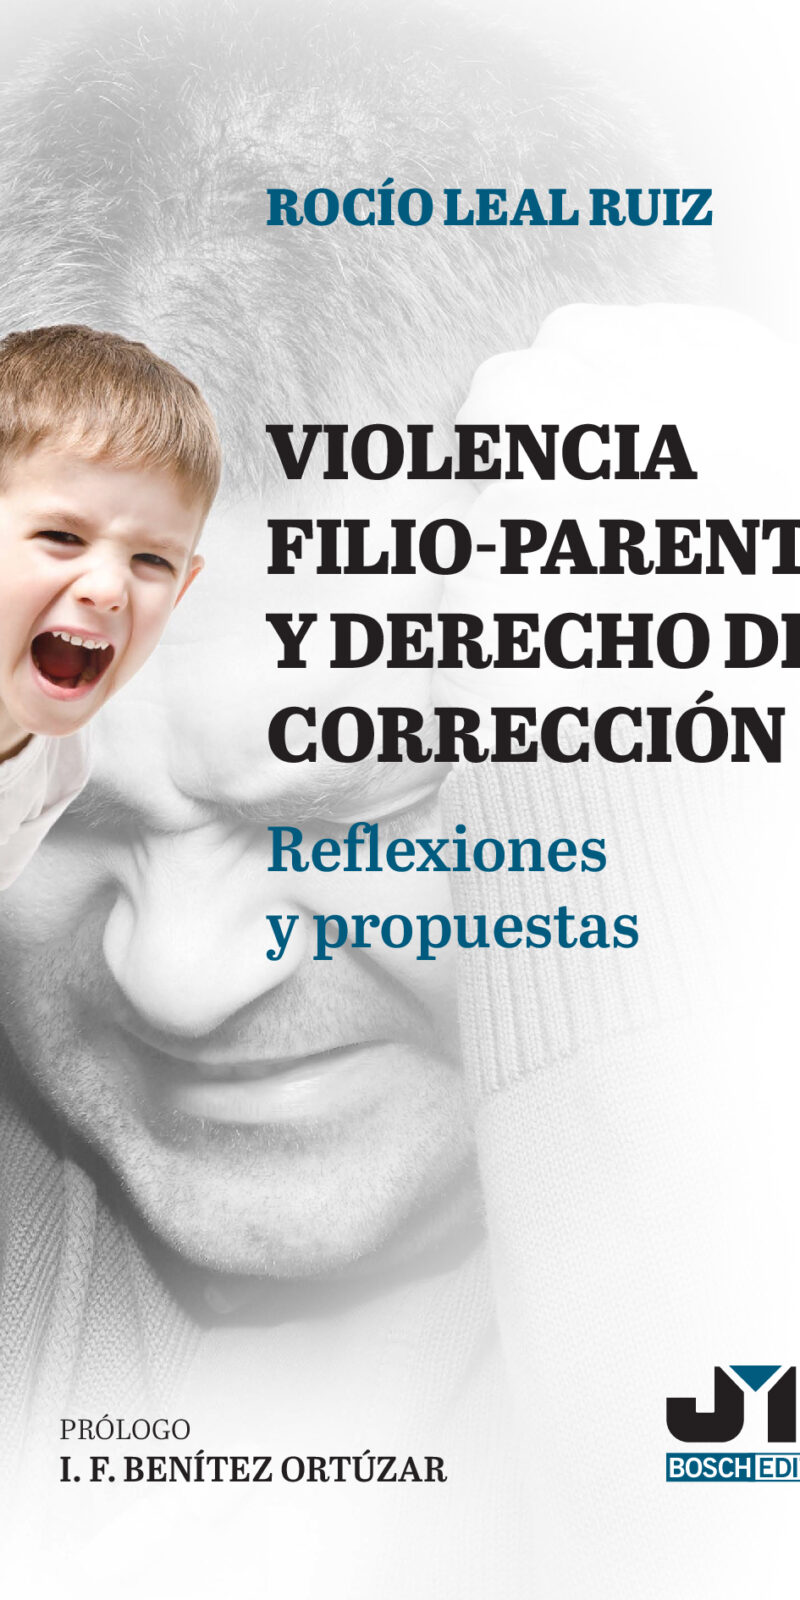 Violencia filio-parental y derecho